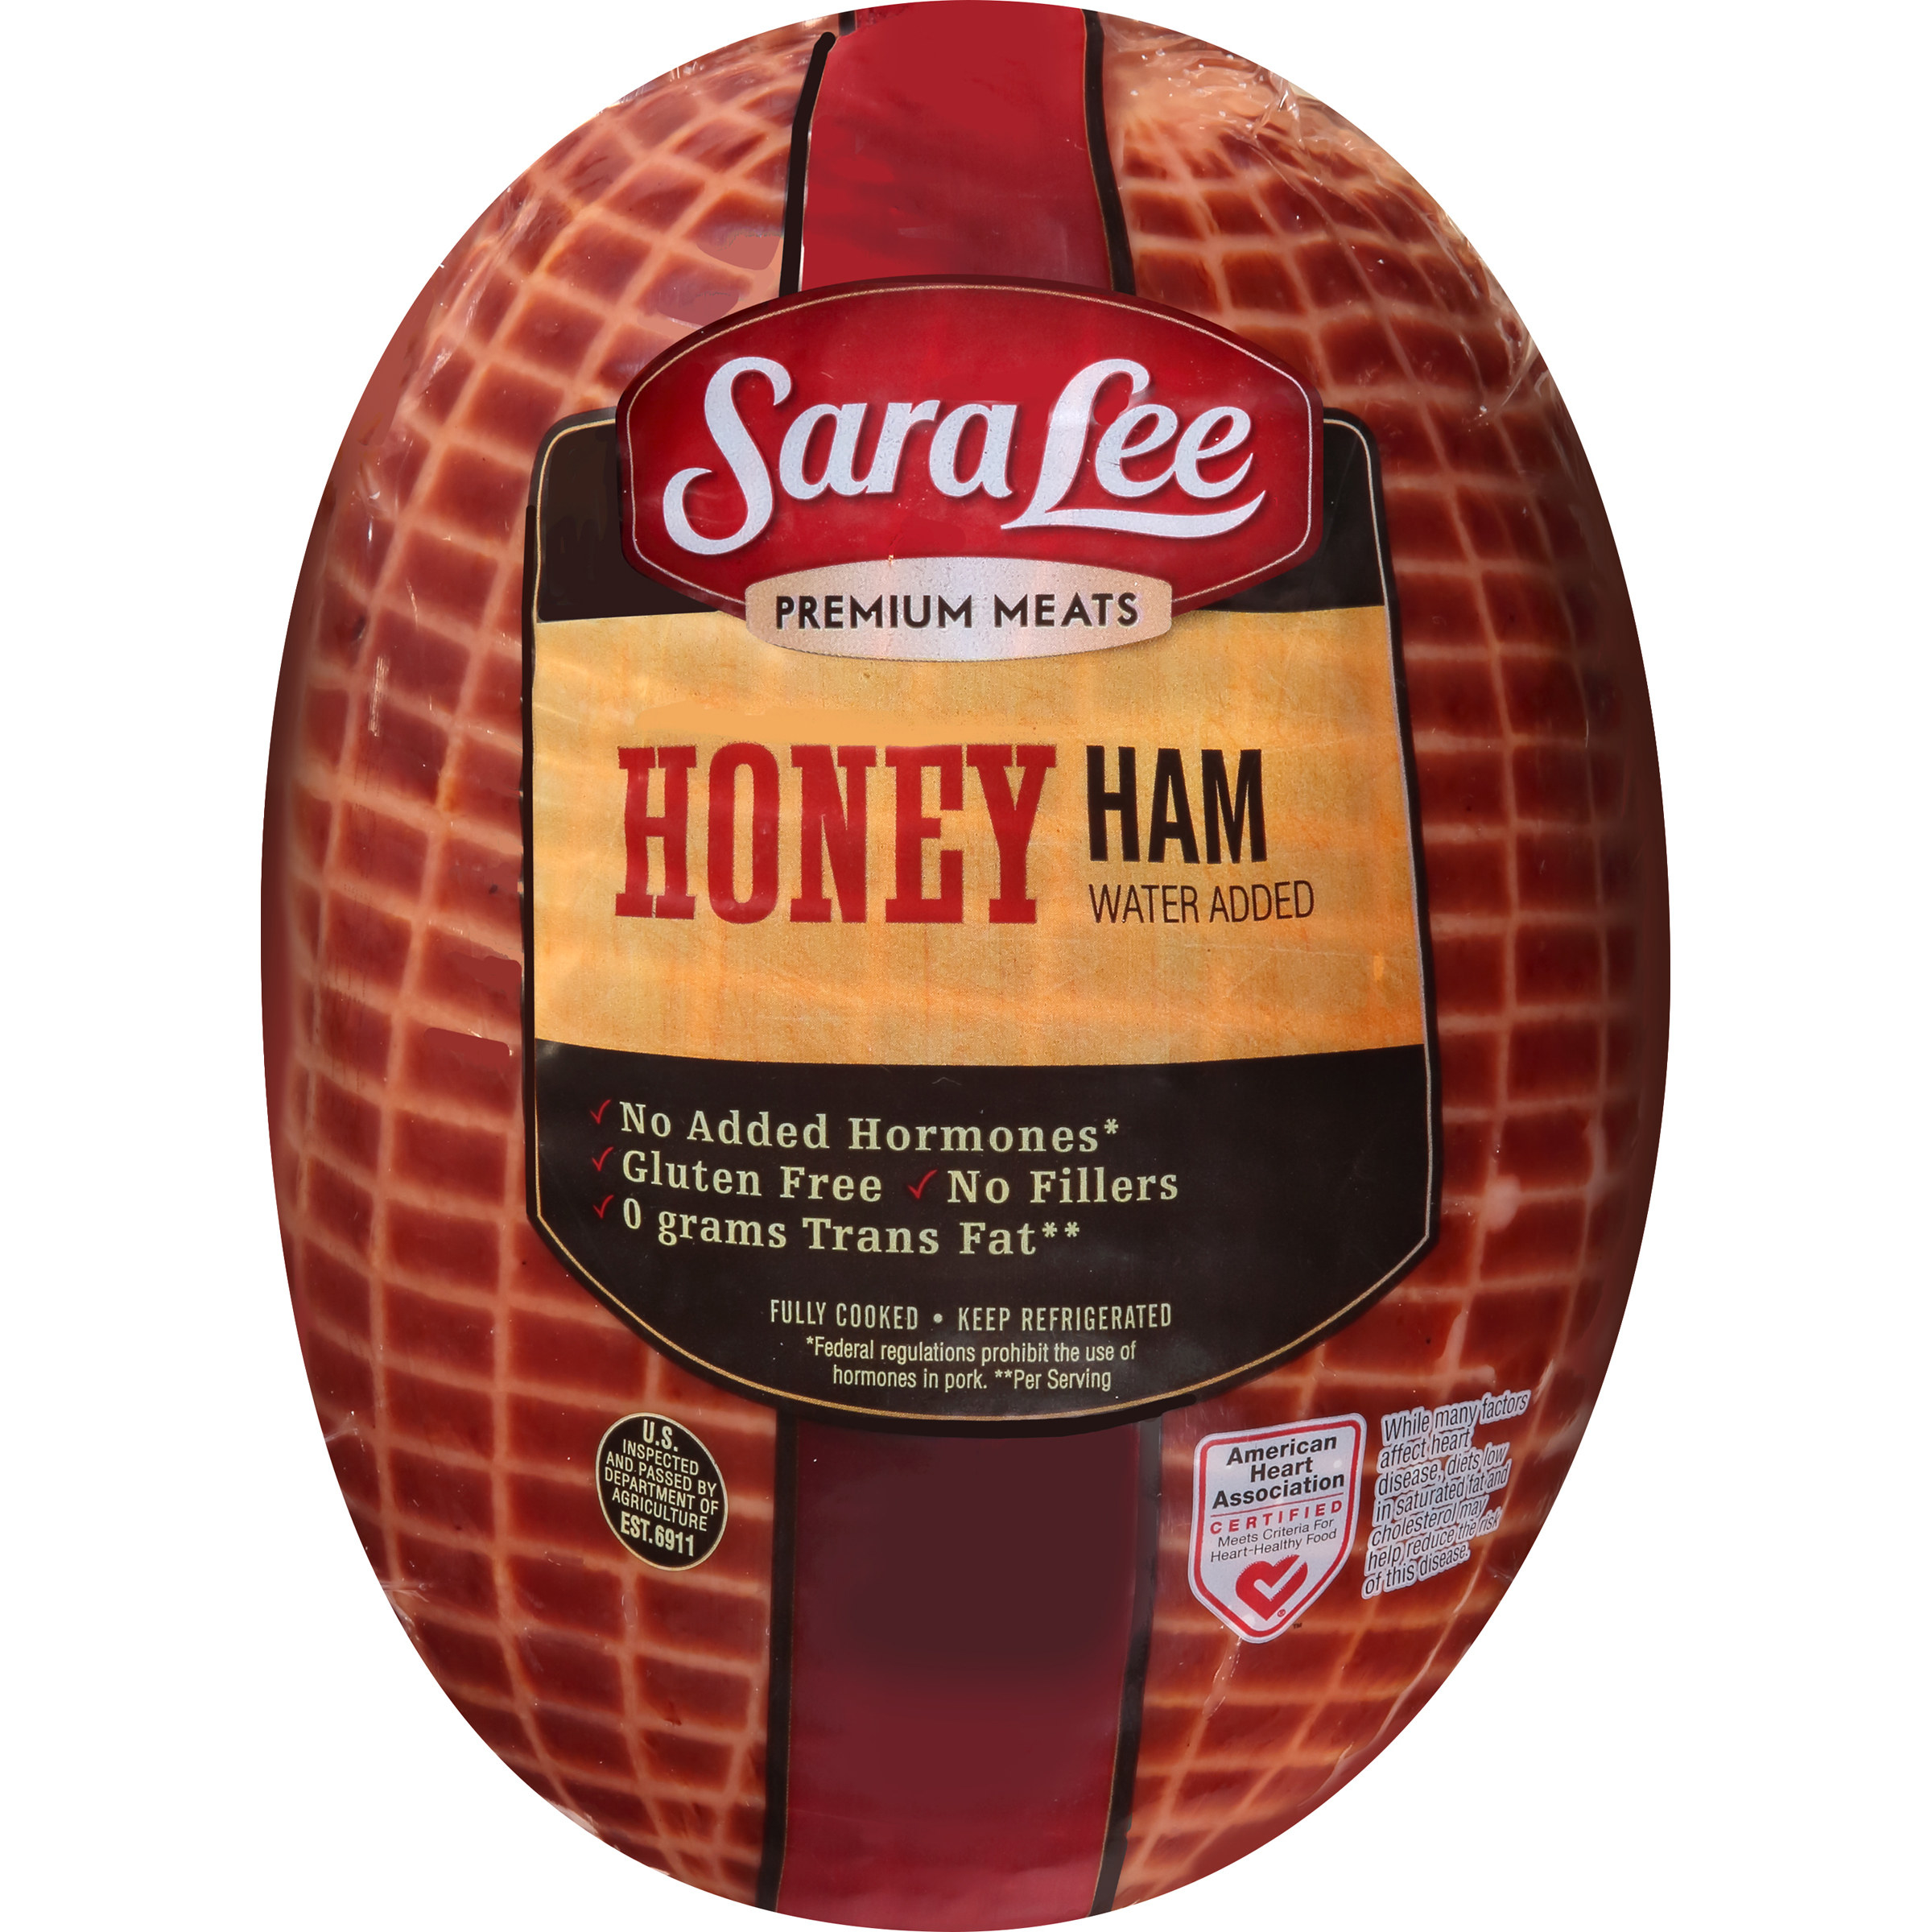 Round honey ham from Sara Lee